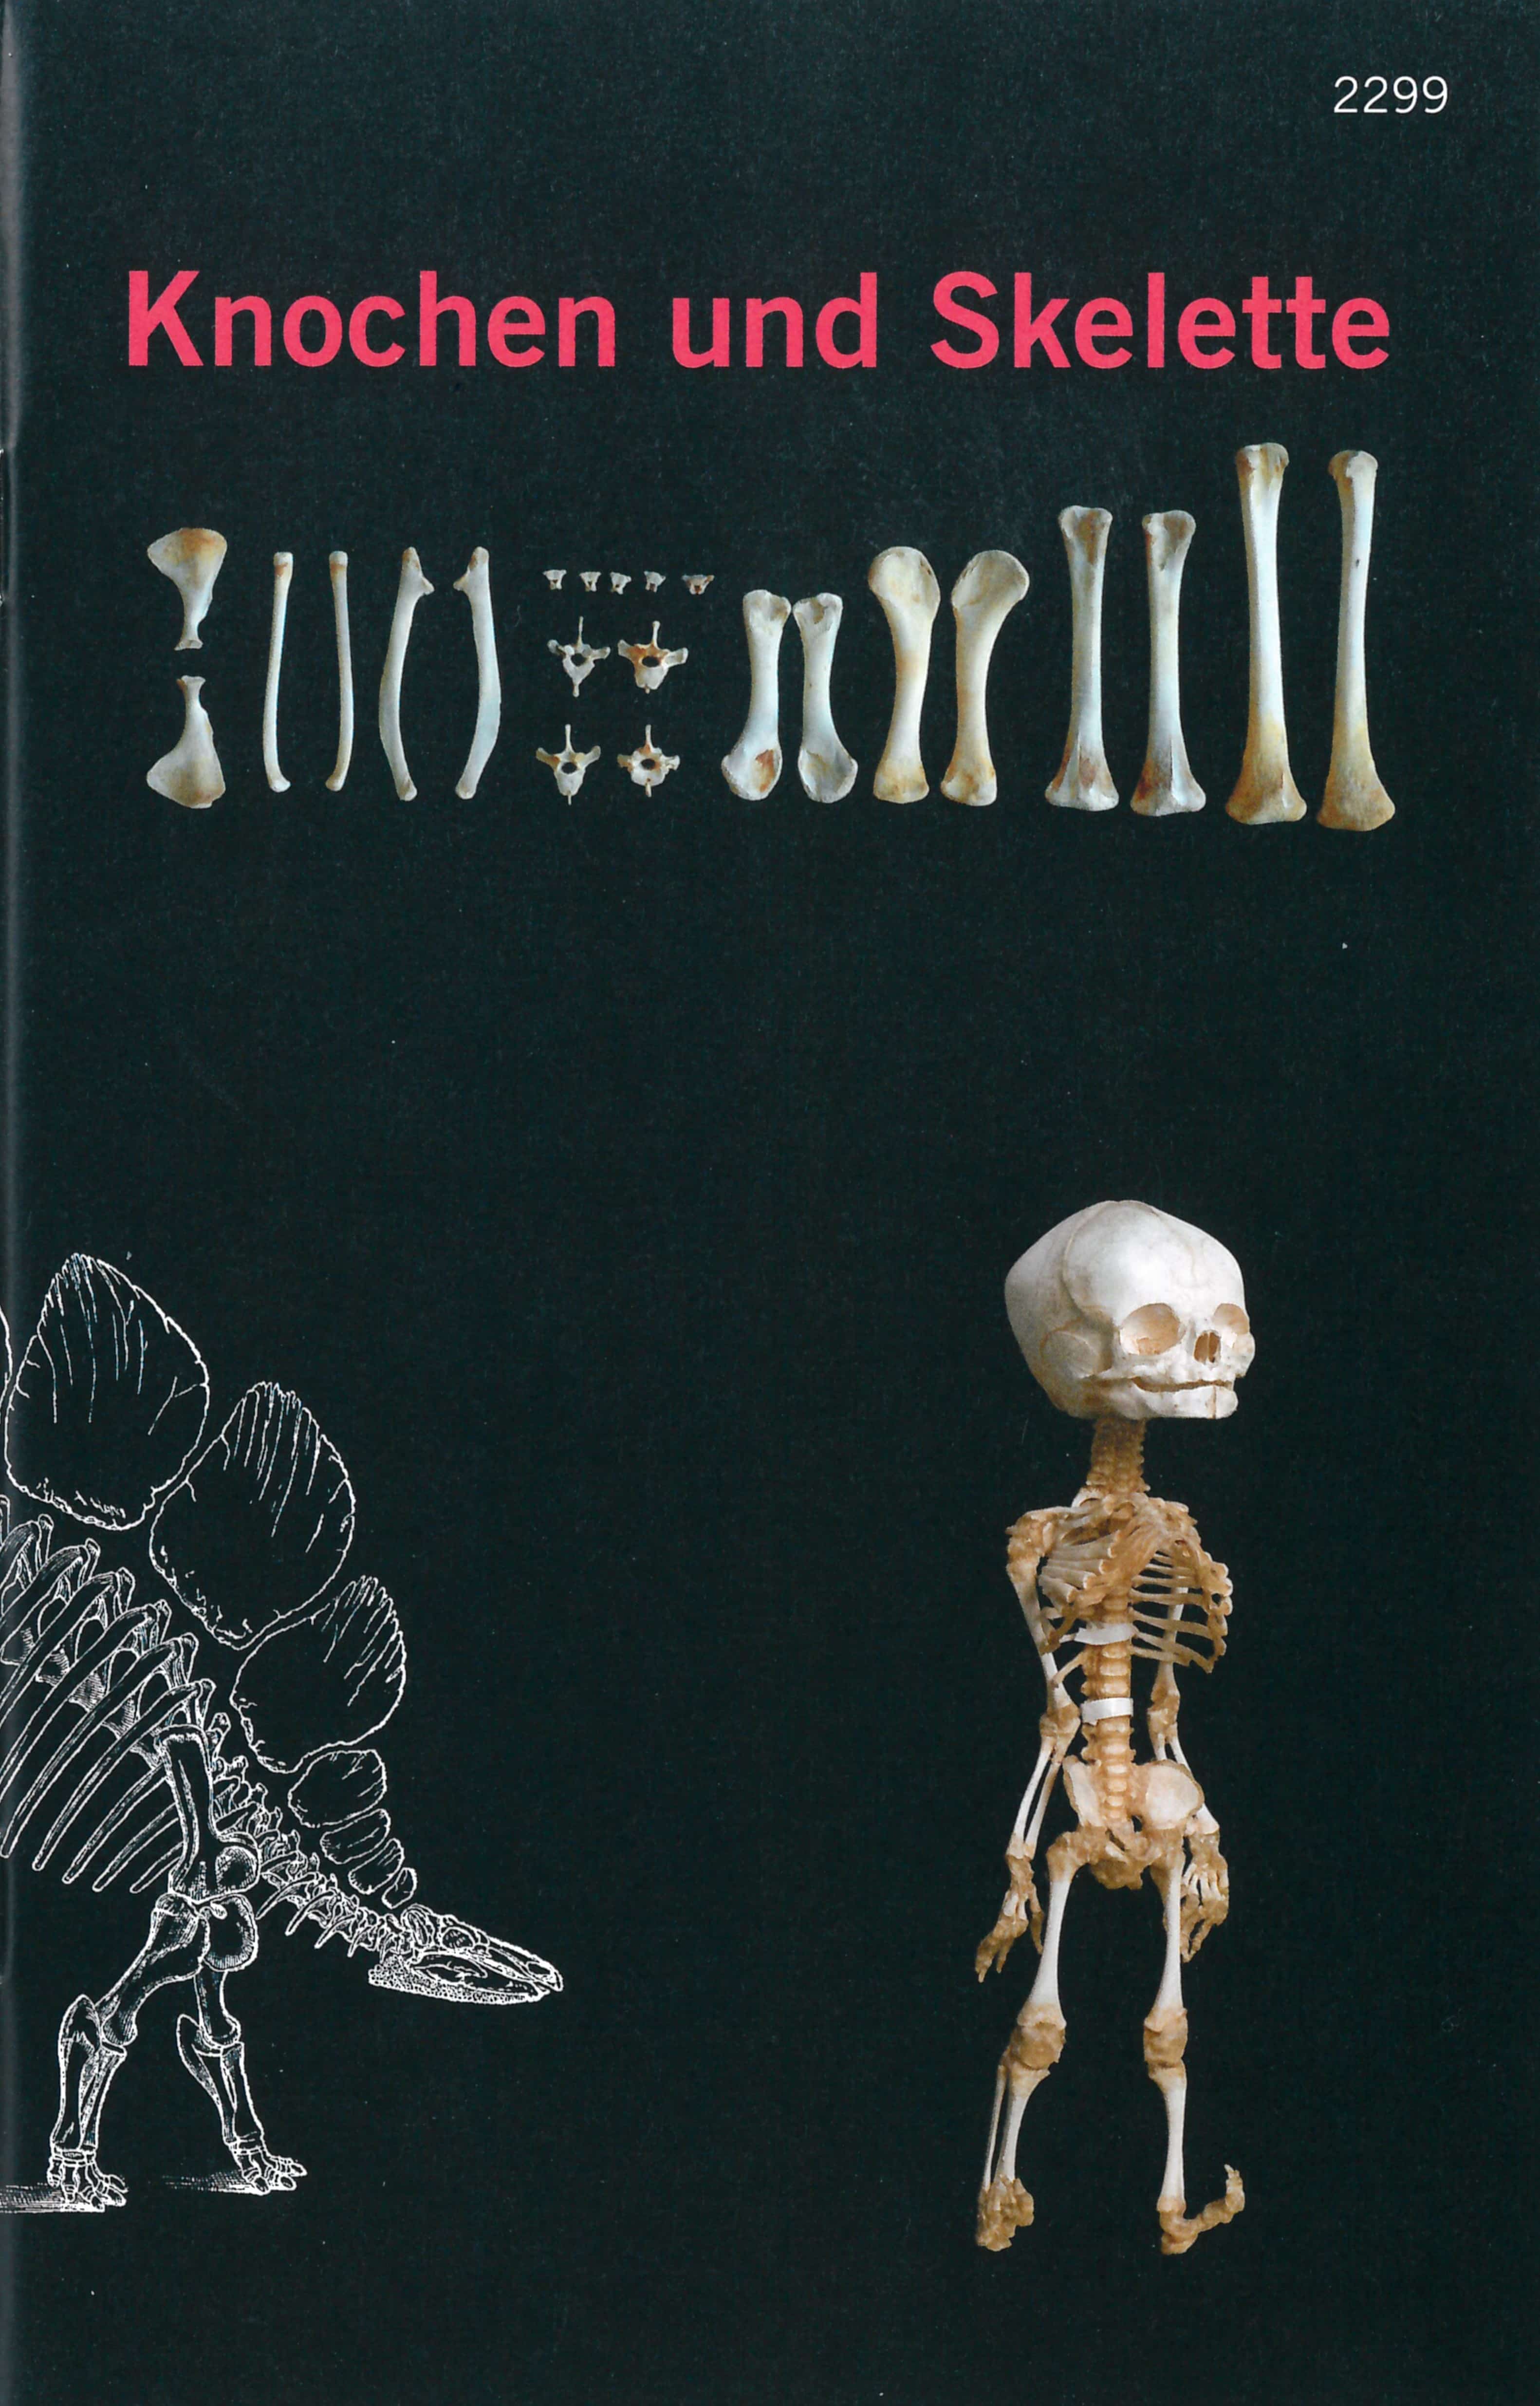 Knochen und Skelette, ein Kinderbuch von Claudia Ruetsche/Annina Keller, Illustration von Hanna Jufer/ Linda Wyss, SJW Verlag